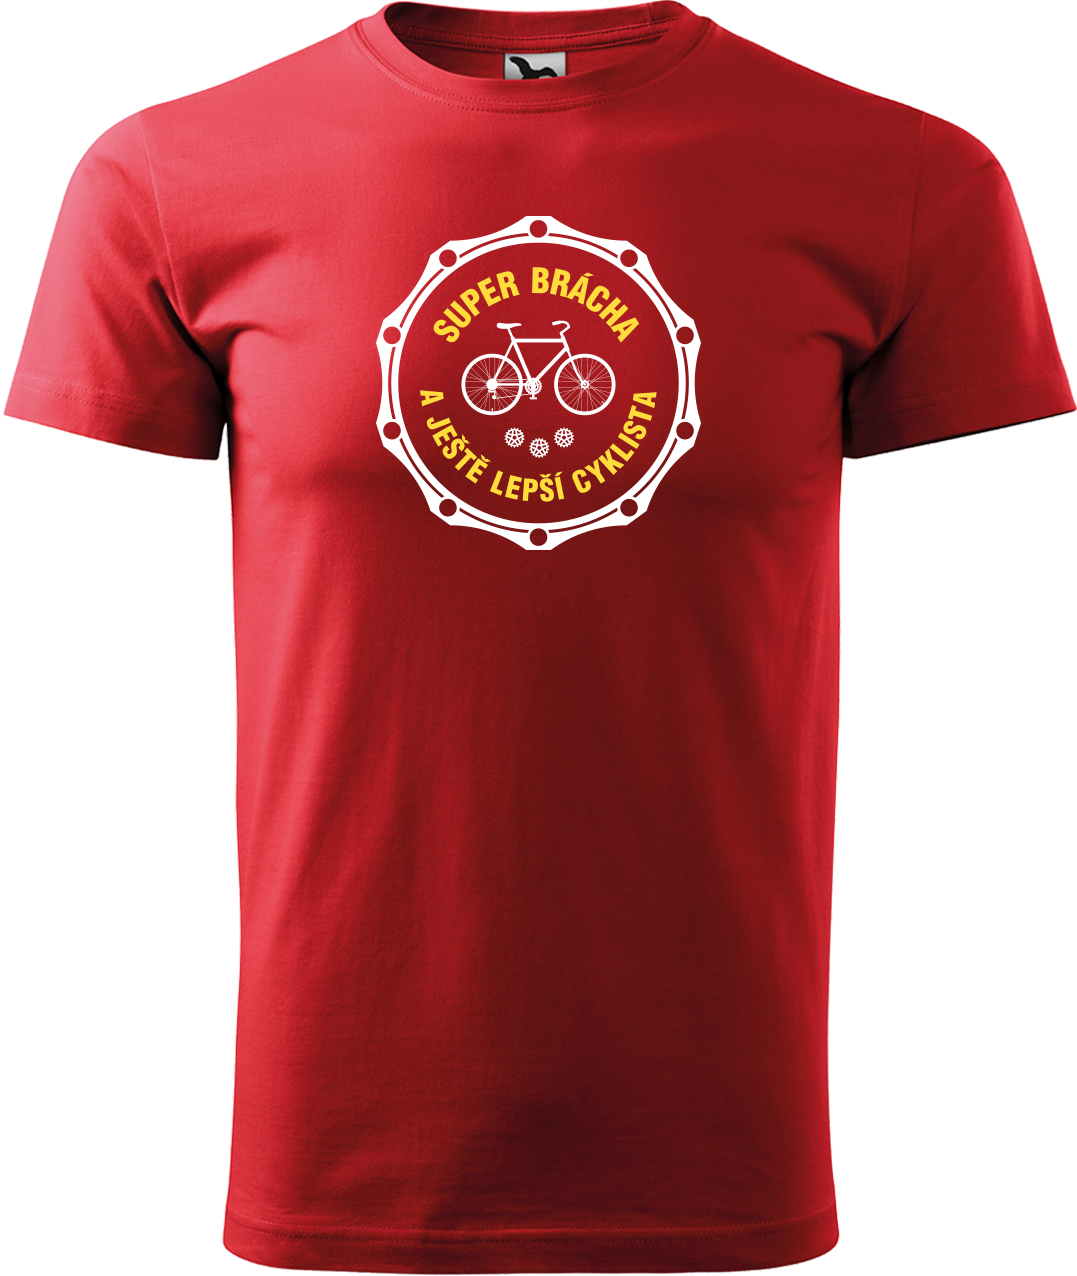 Pánské tričko pro cyklistu - Super brácha a ještě lepší cyklista Velikost: M, Barva: Červená (07)